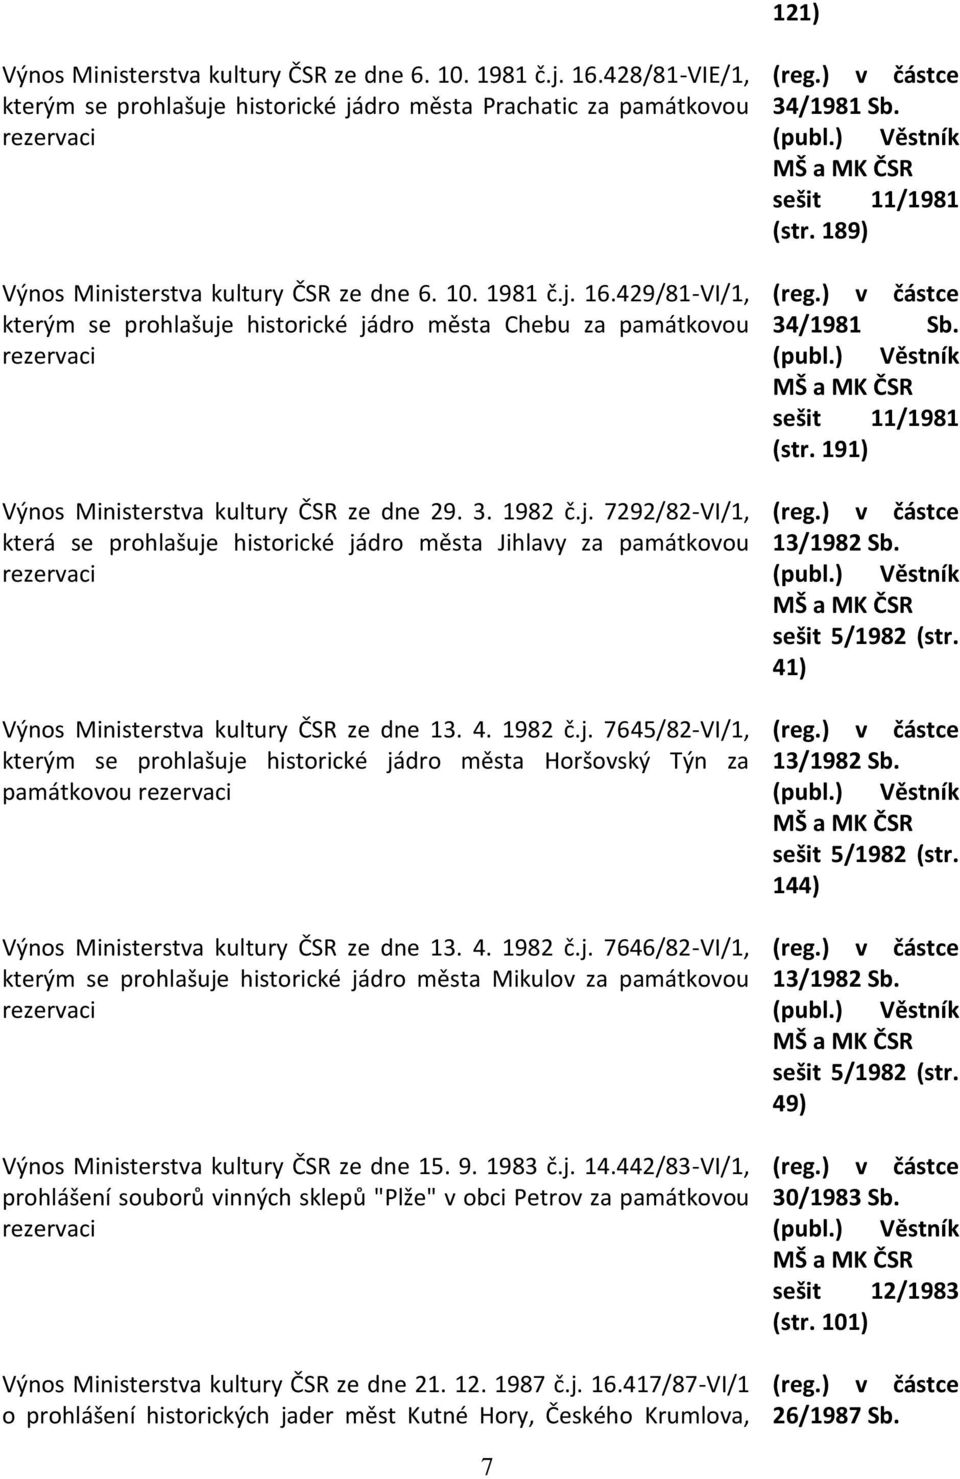 4. 1982 č.j. 7646/82-VI/1, kterým se prohlašuje historické jádro města Mikulov za památkovou Výnos Ministerstva kultury ČSR ze dne 15. 9. 1983 č.j. 14.